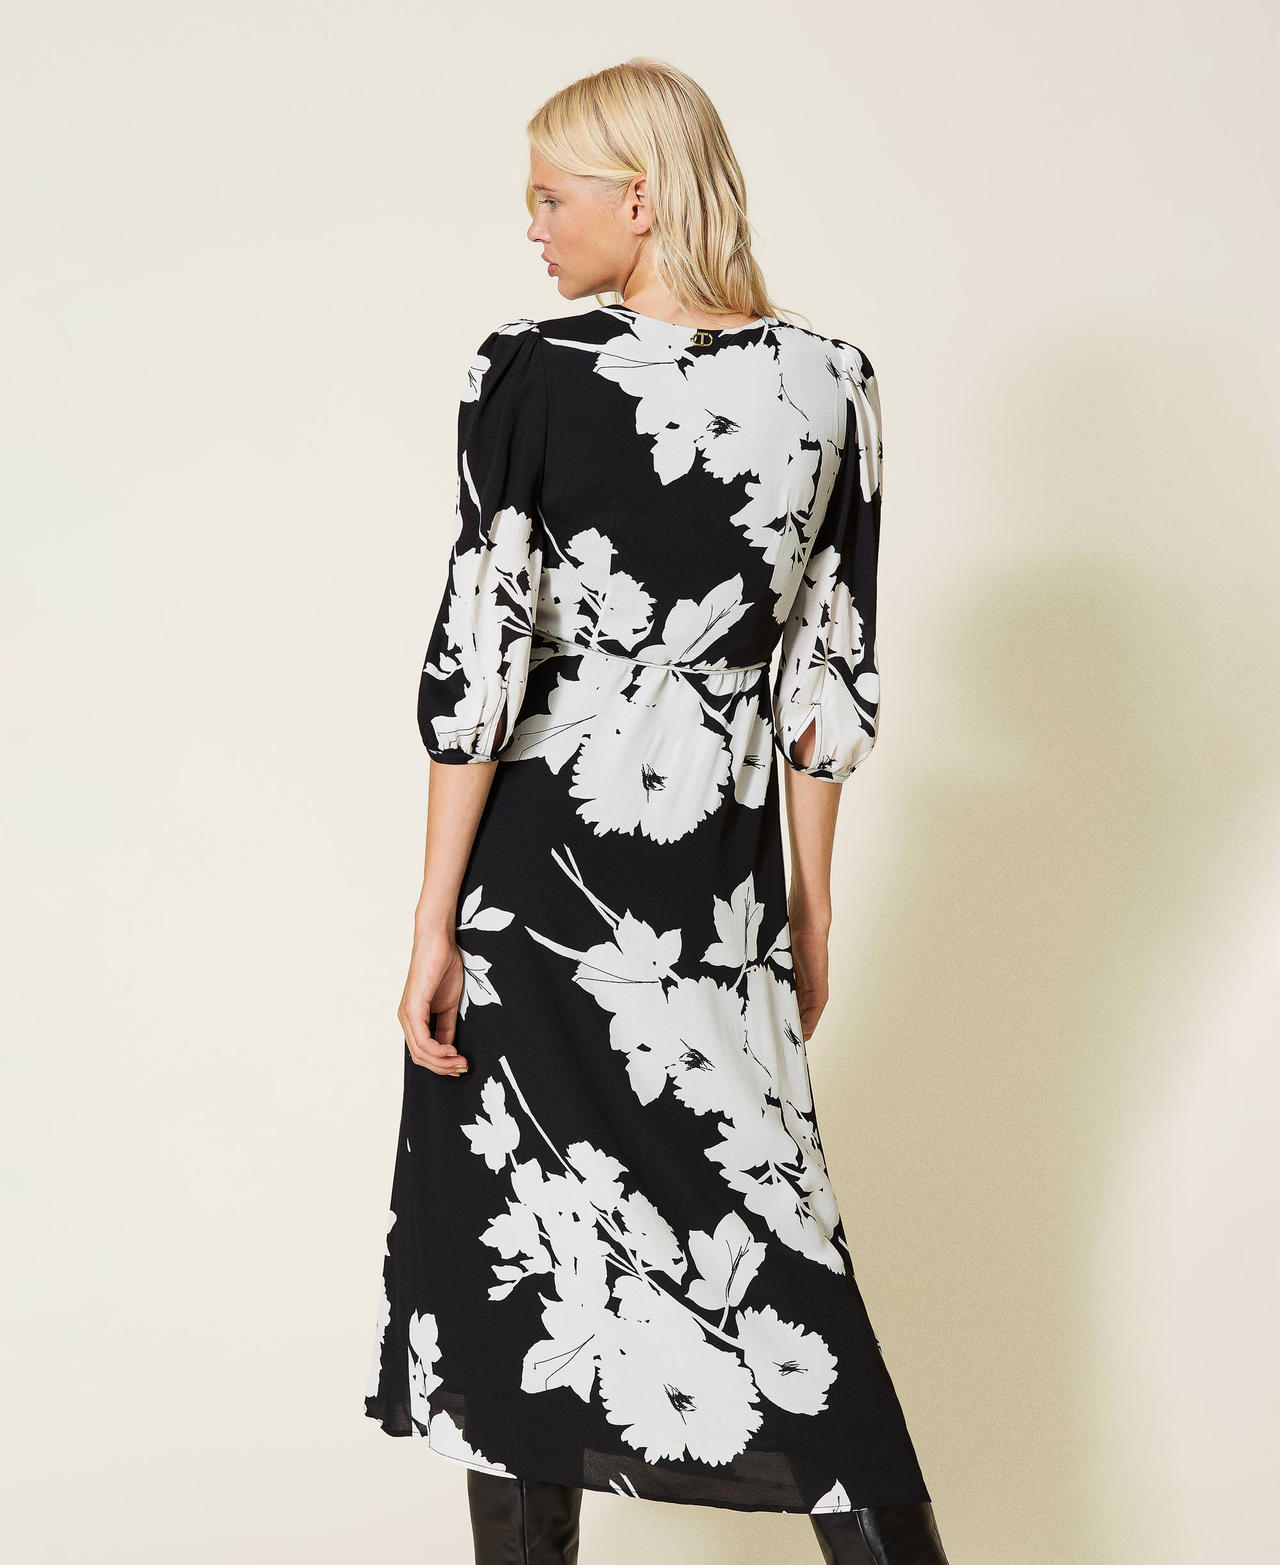 Robe longue en crêpe avec imprimé floral Imprimé Fleurs Blanc « Neige » / Noir Femme 212TP2635-03